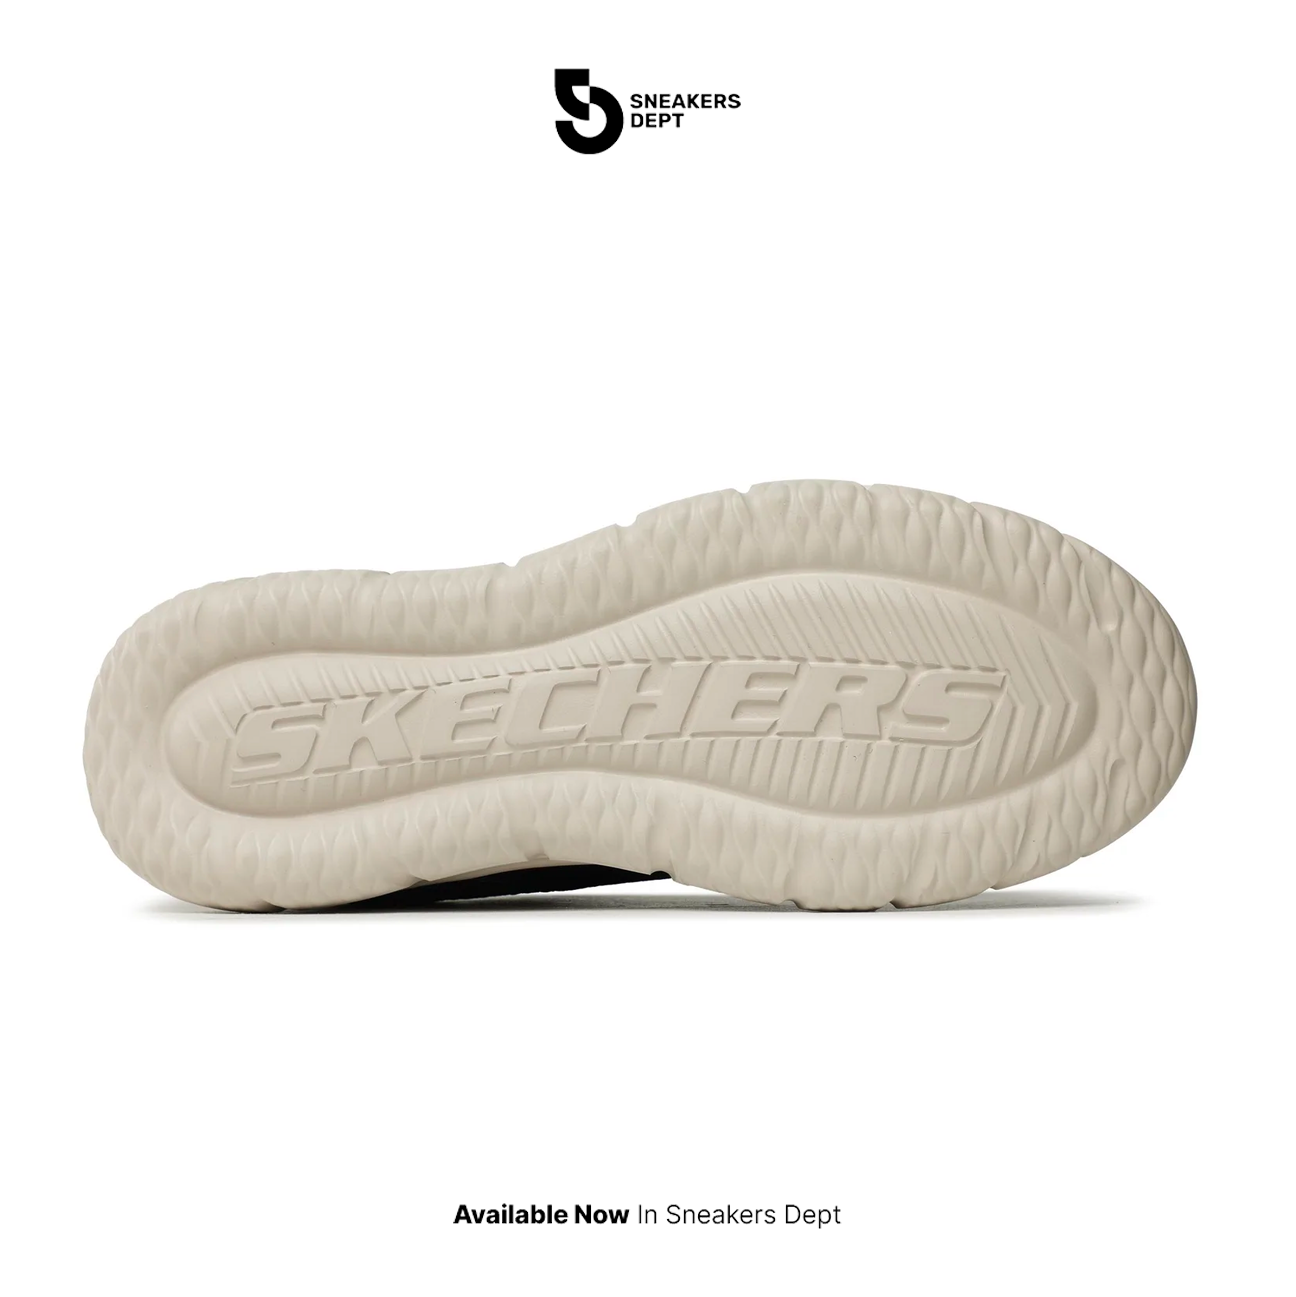 Sepatu Sneakers Pria SKECHERS DEL RETTO ARLING 210573NVY ORIGINAL